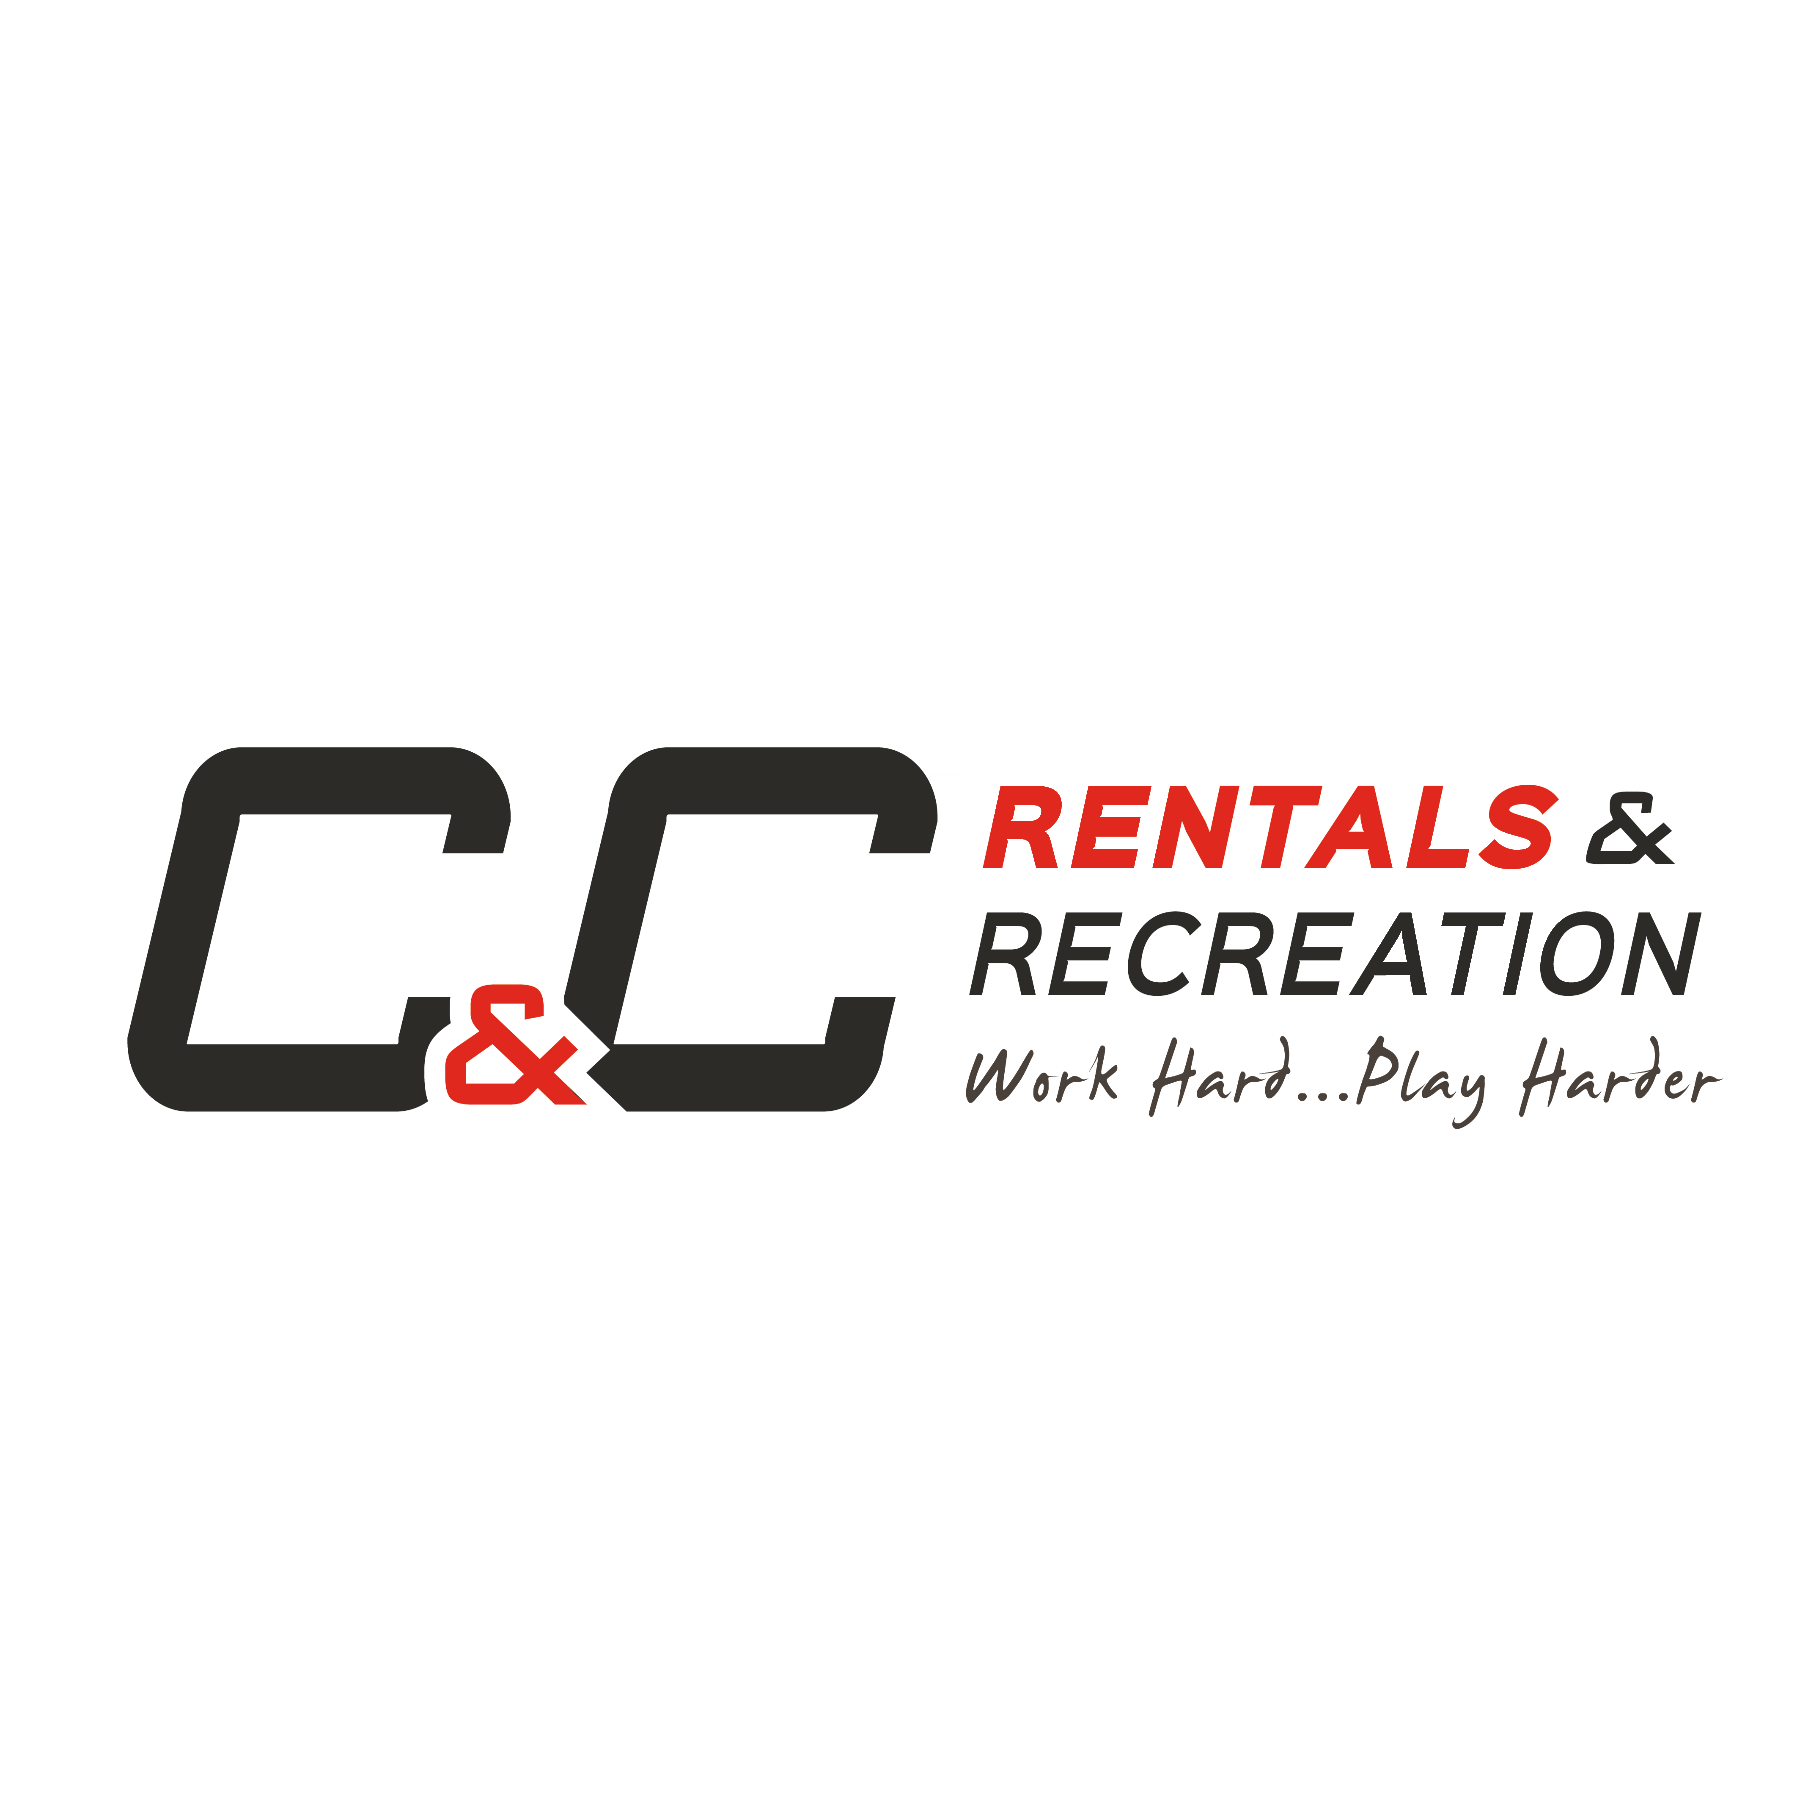 C&C RENTALS LTD.